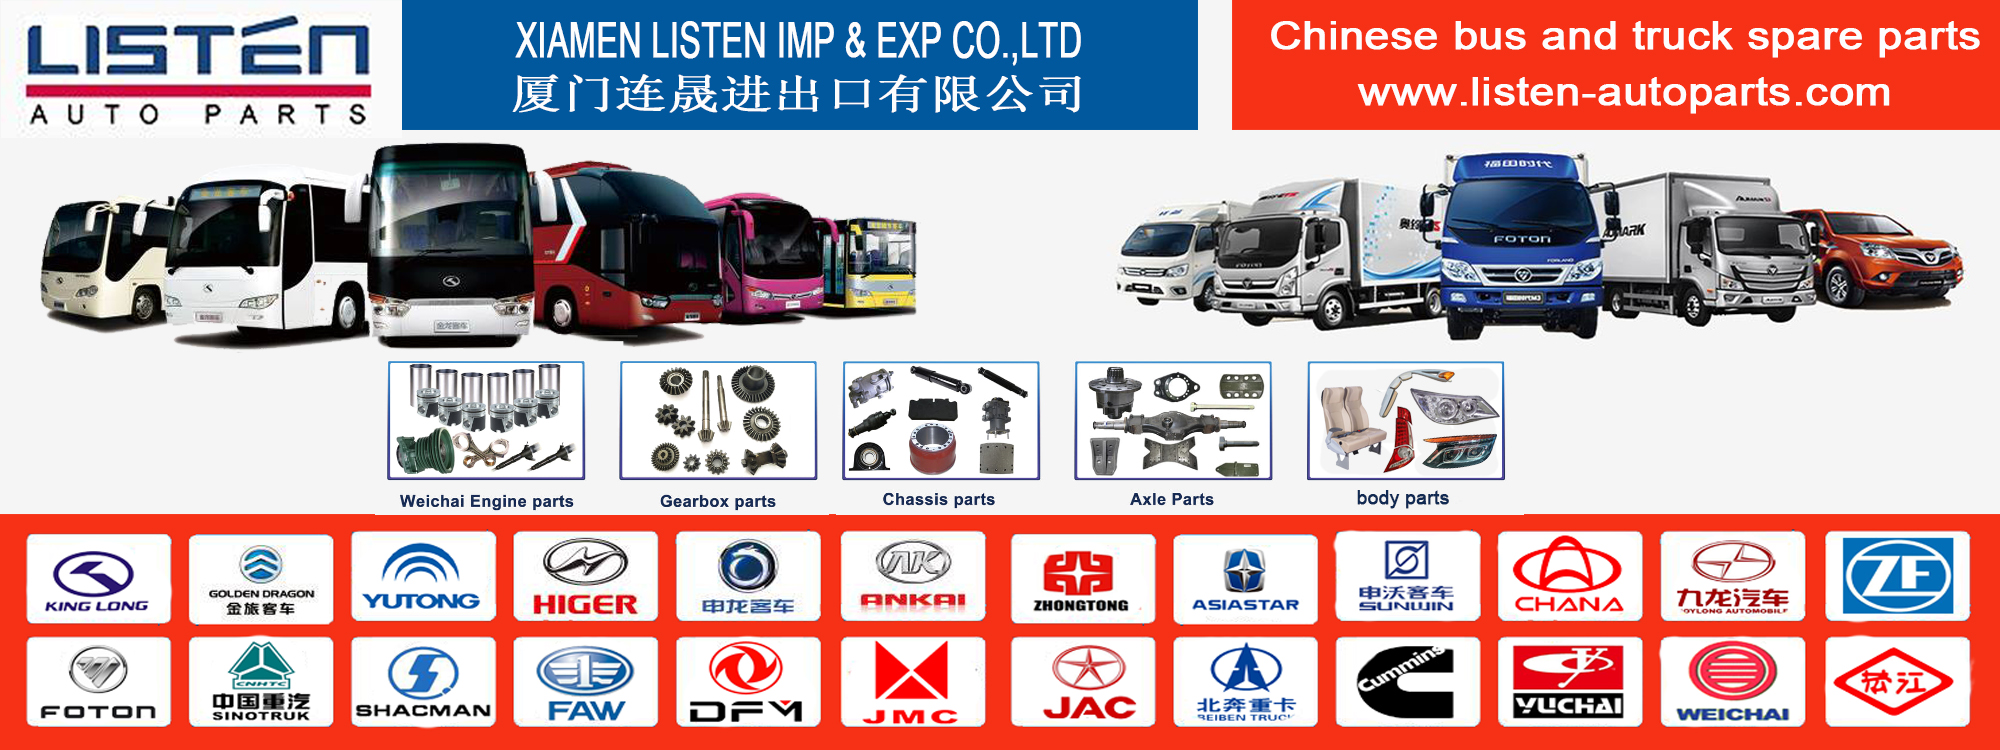 شيامن الاستماع IMP & Exp Co.، Ltd